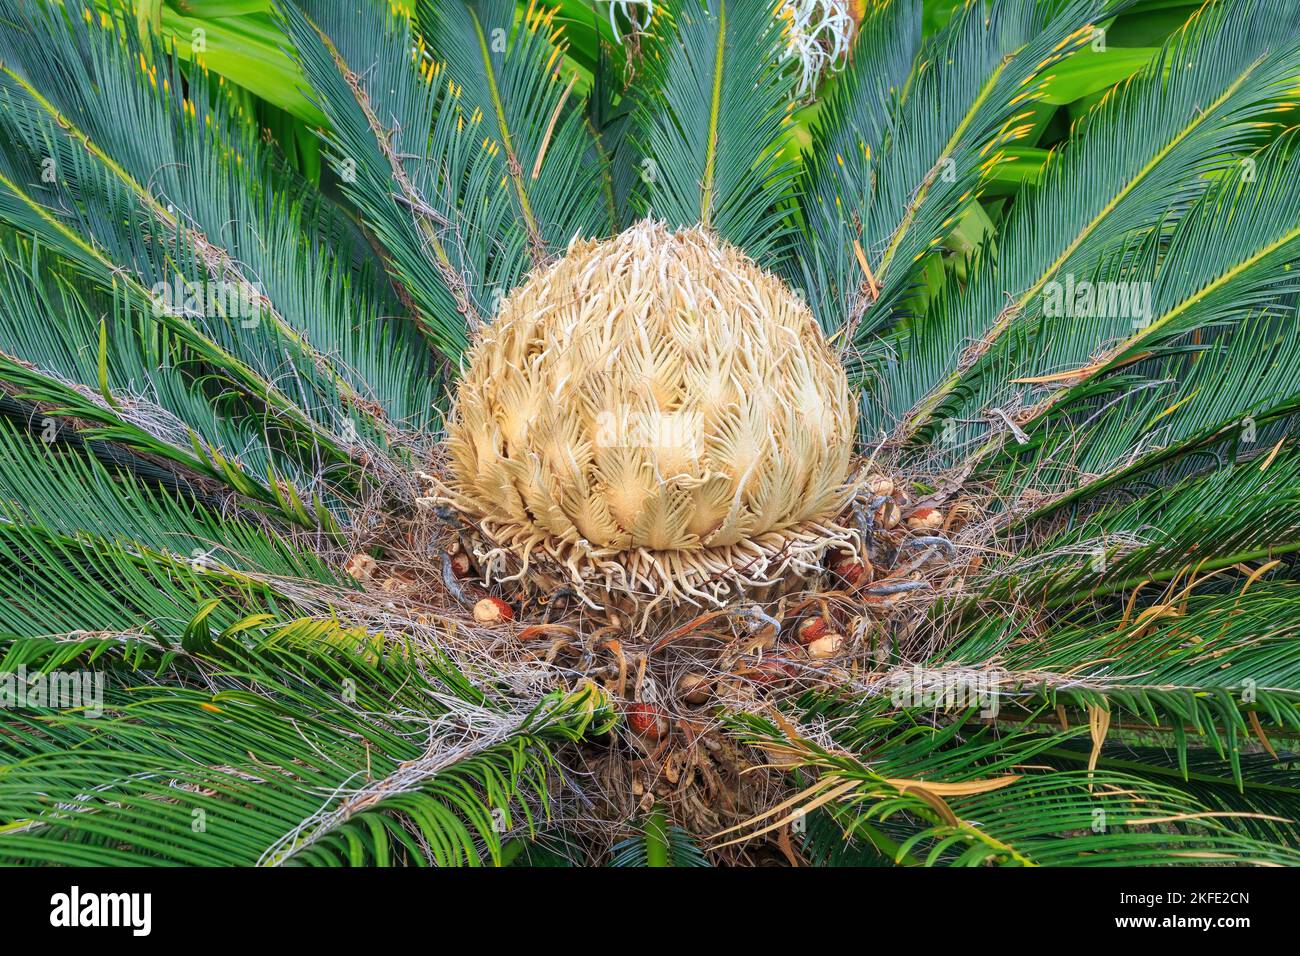 Ein Weibchen auf einem Zykad, Cycas Revoluta, auch bekannt als Sago-Palme. Zykaden sind eine alte Gruppe palmenartiger Pflanzen Stockfoto